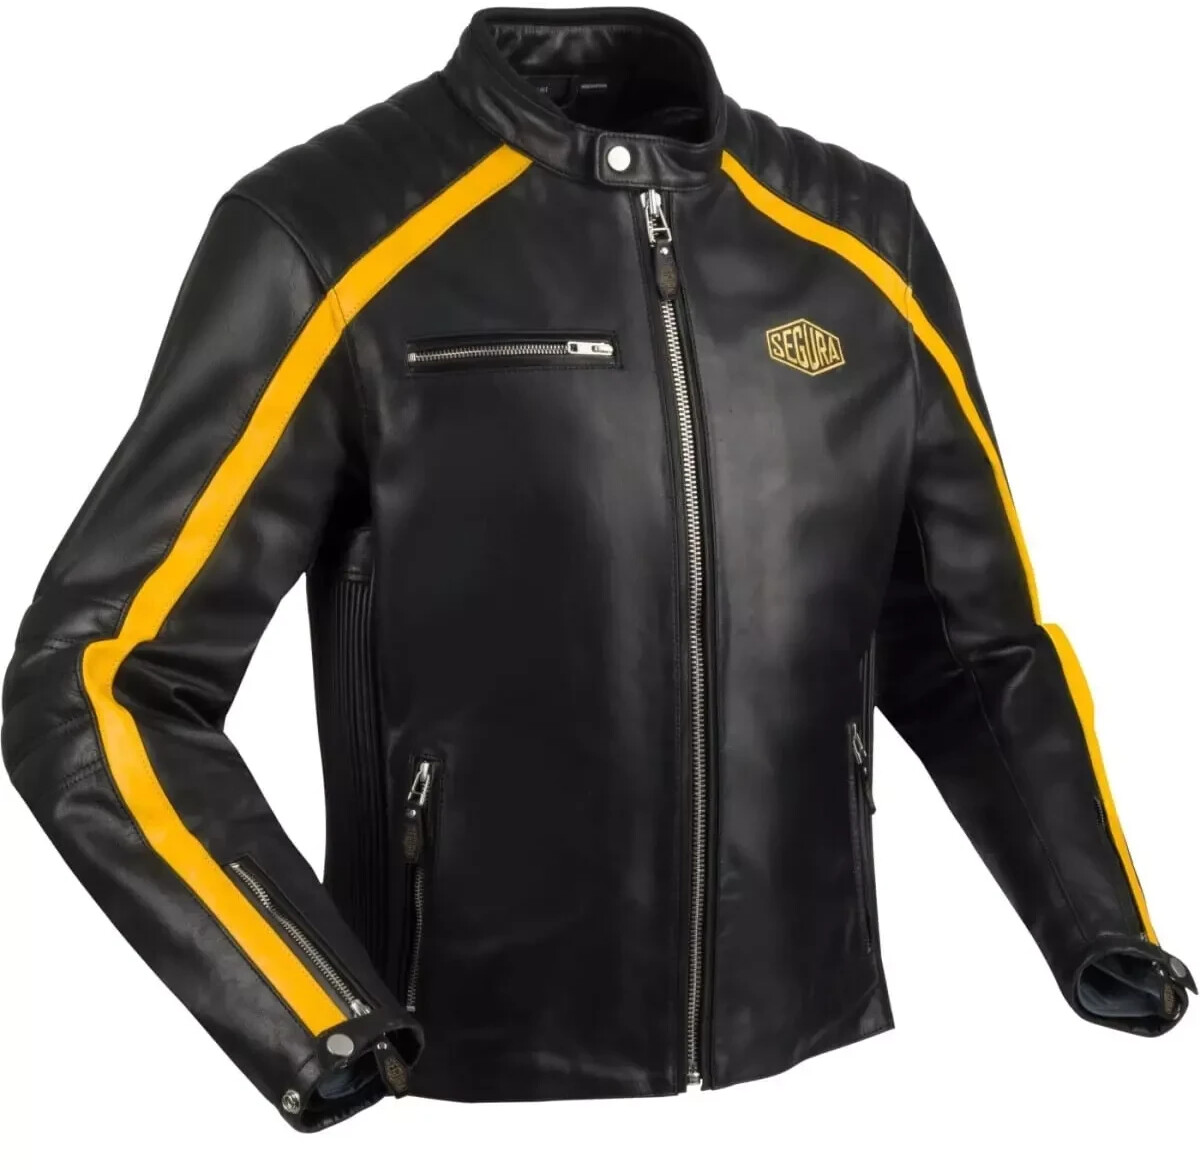 Photos - Motorcycle Clothing SEGURA Formula Leather Jacket black/yellow 